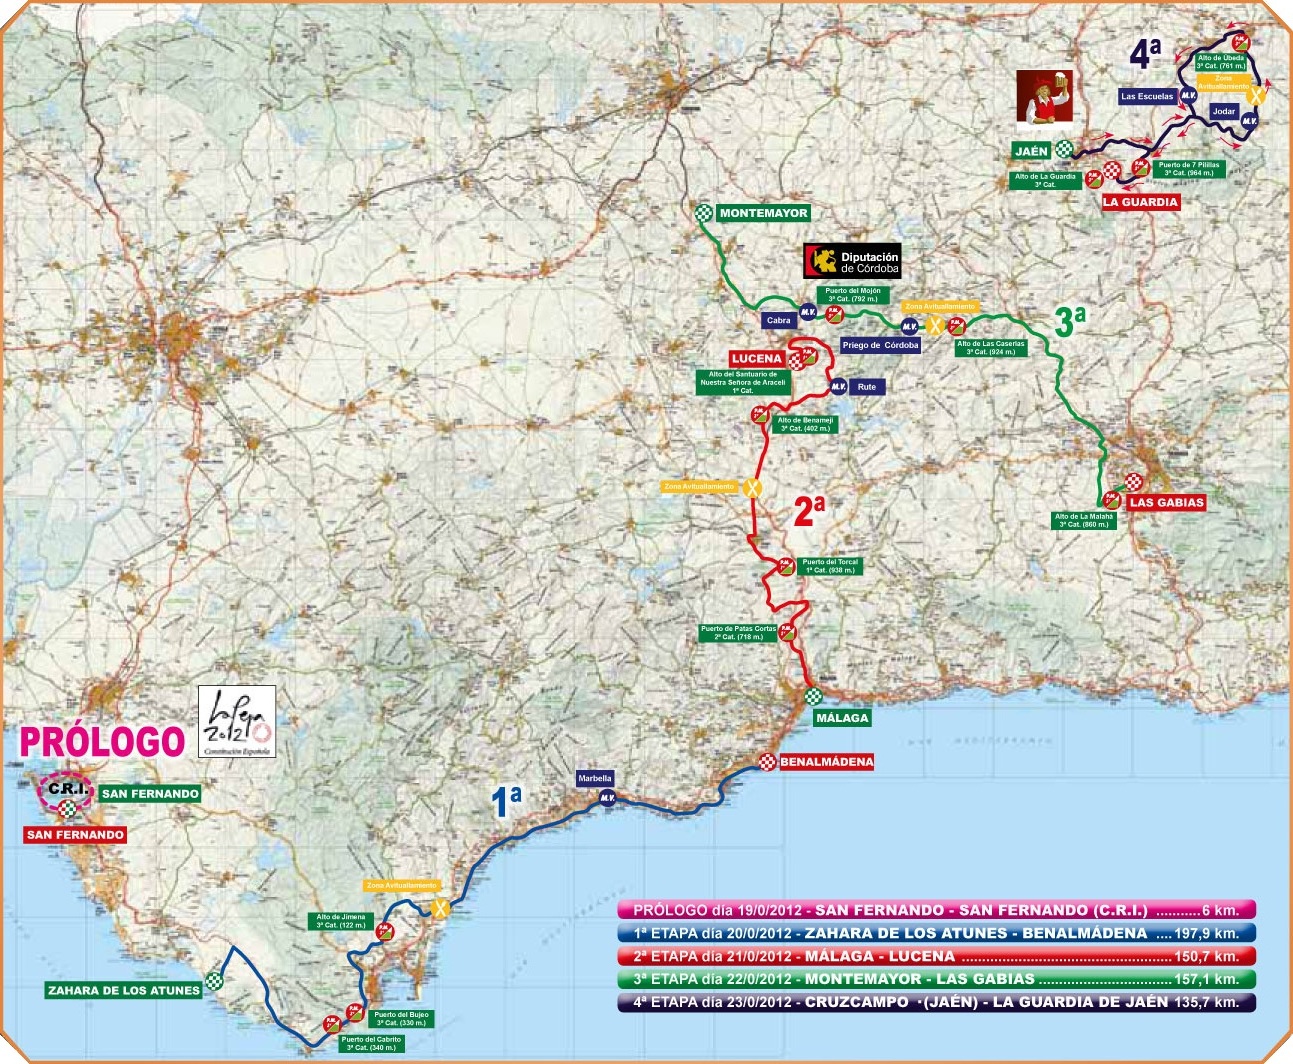 Streckenverlauf Vuelta a Andalucia Ruta Ciclista Del Sol 2012